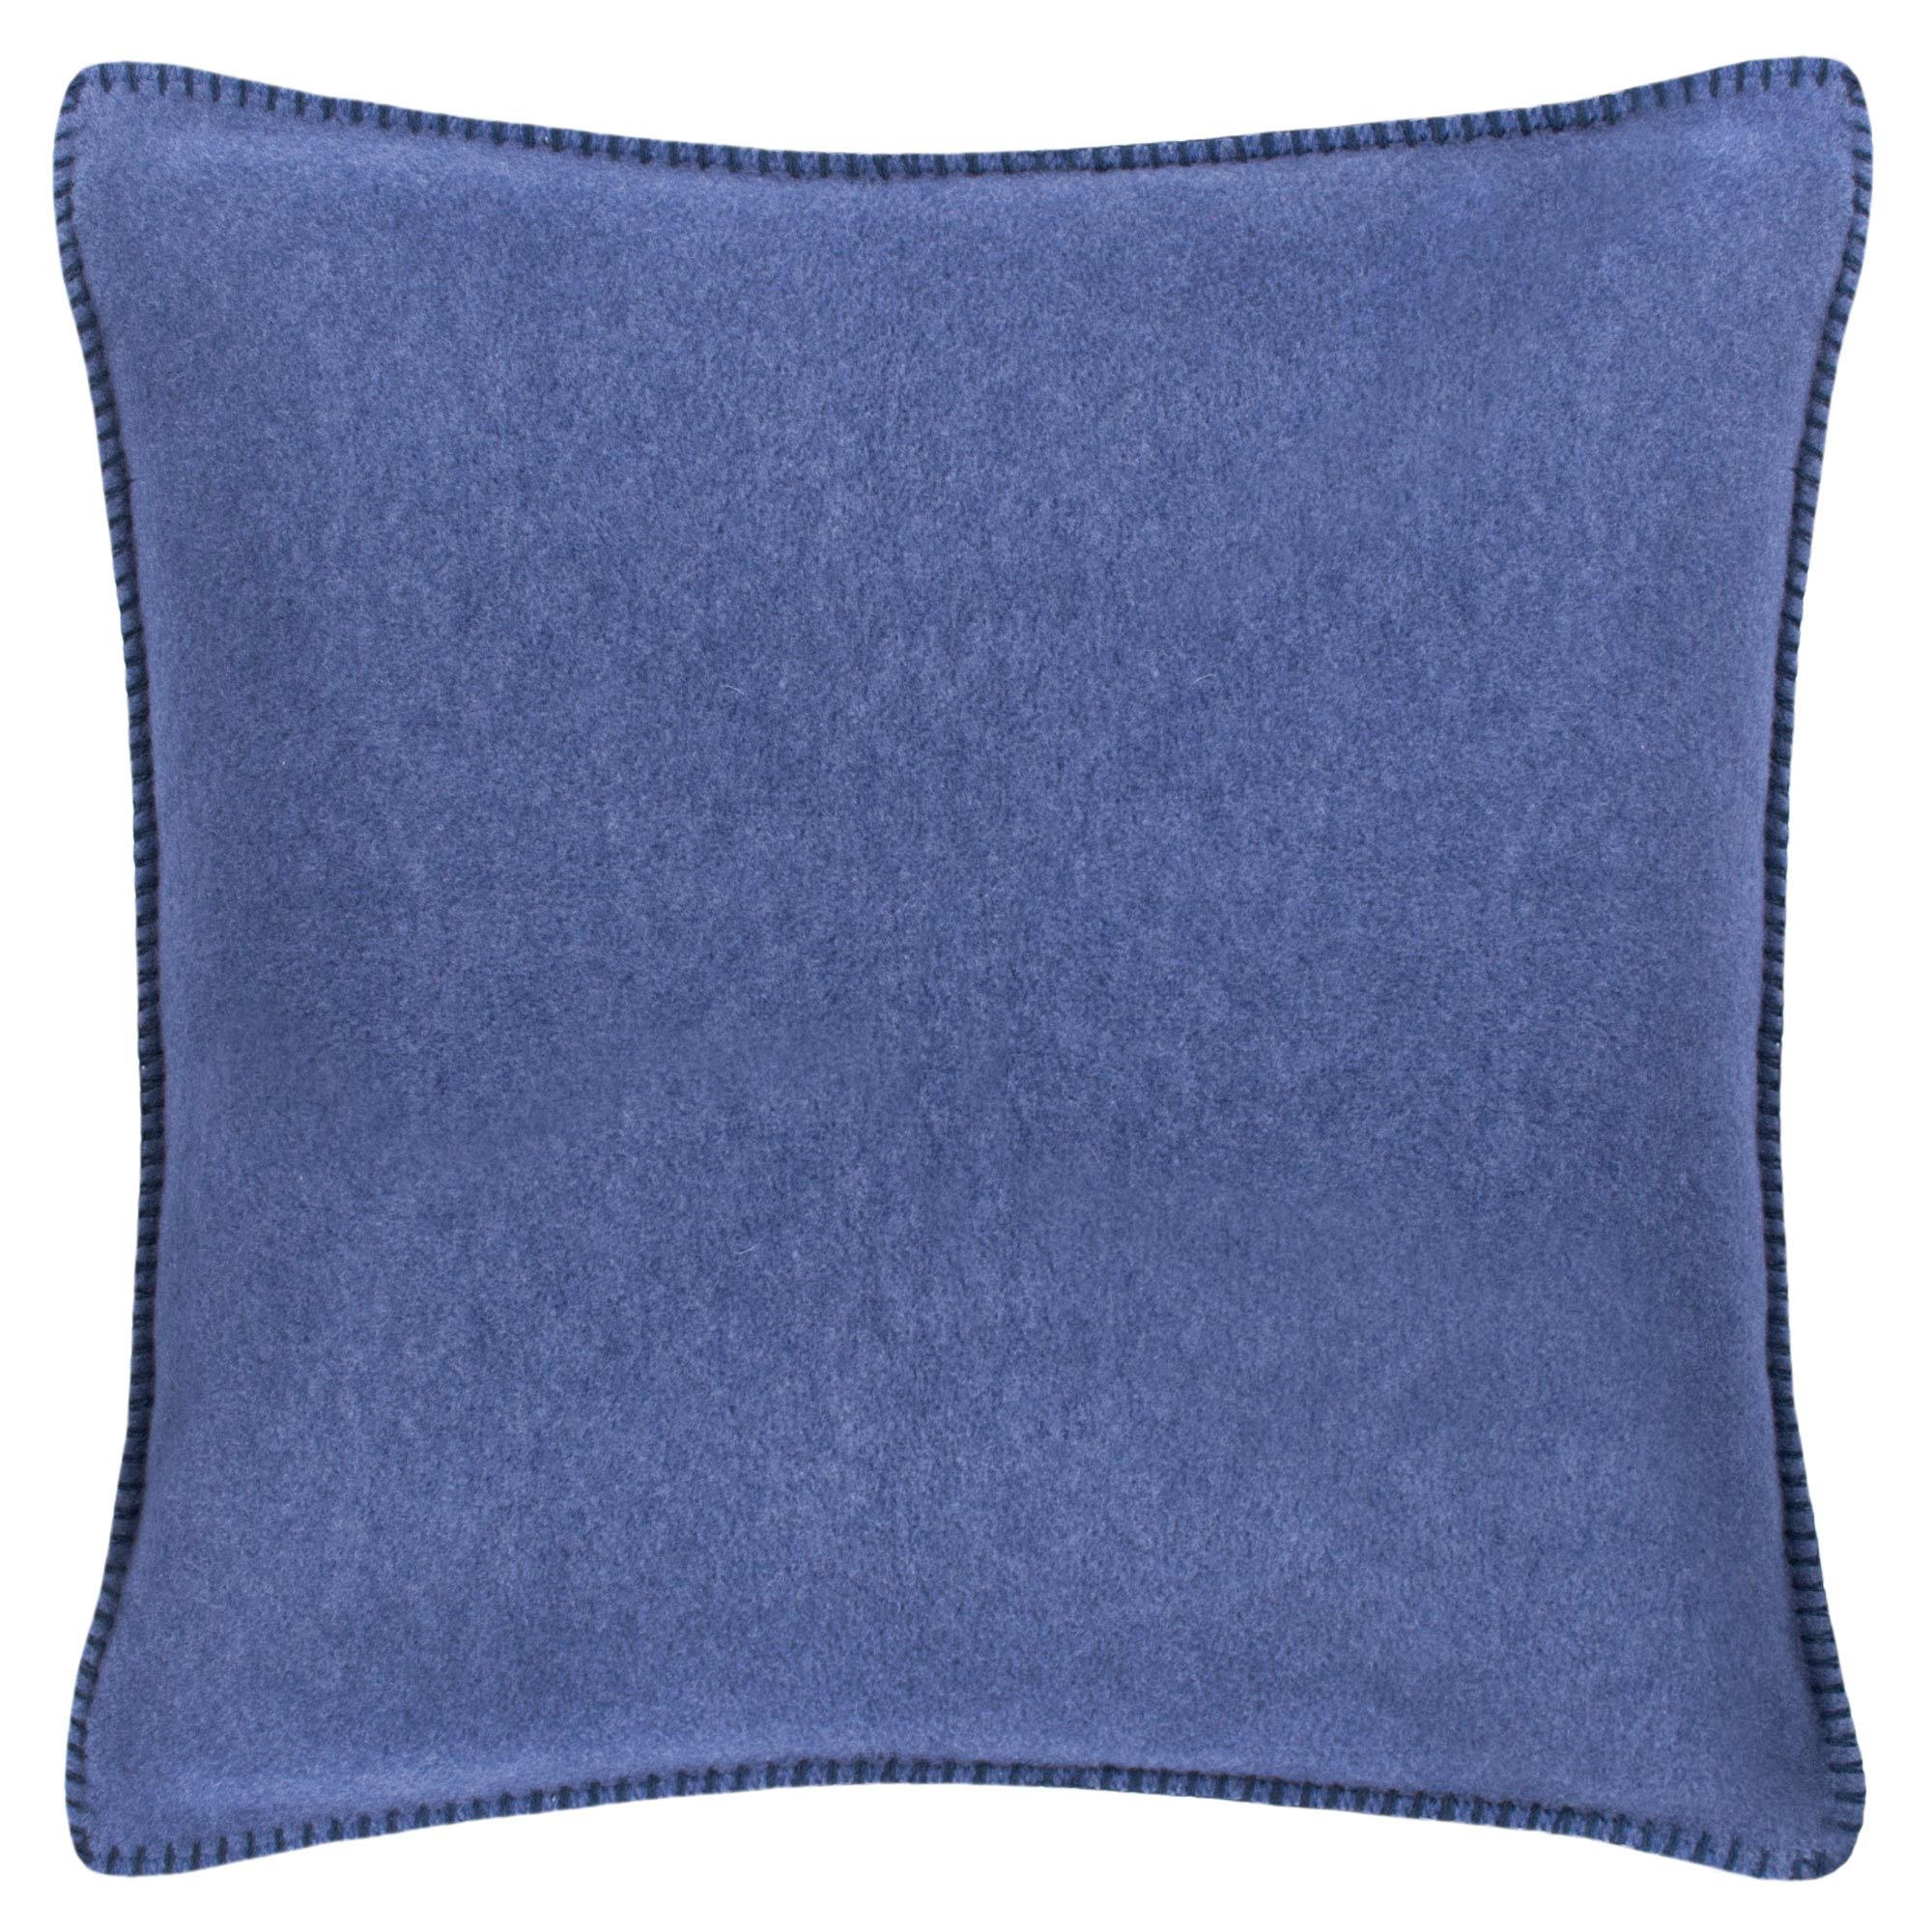 KISSENHÜLLE Soft-Fleece 50/50 cm  - Blau, Basics, Textil (50/50cm) - Zoeppritz